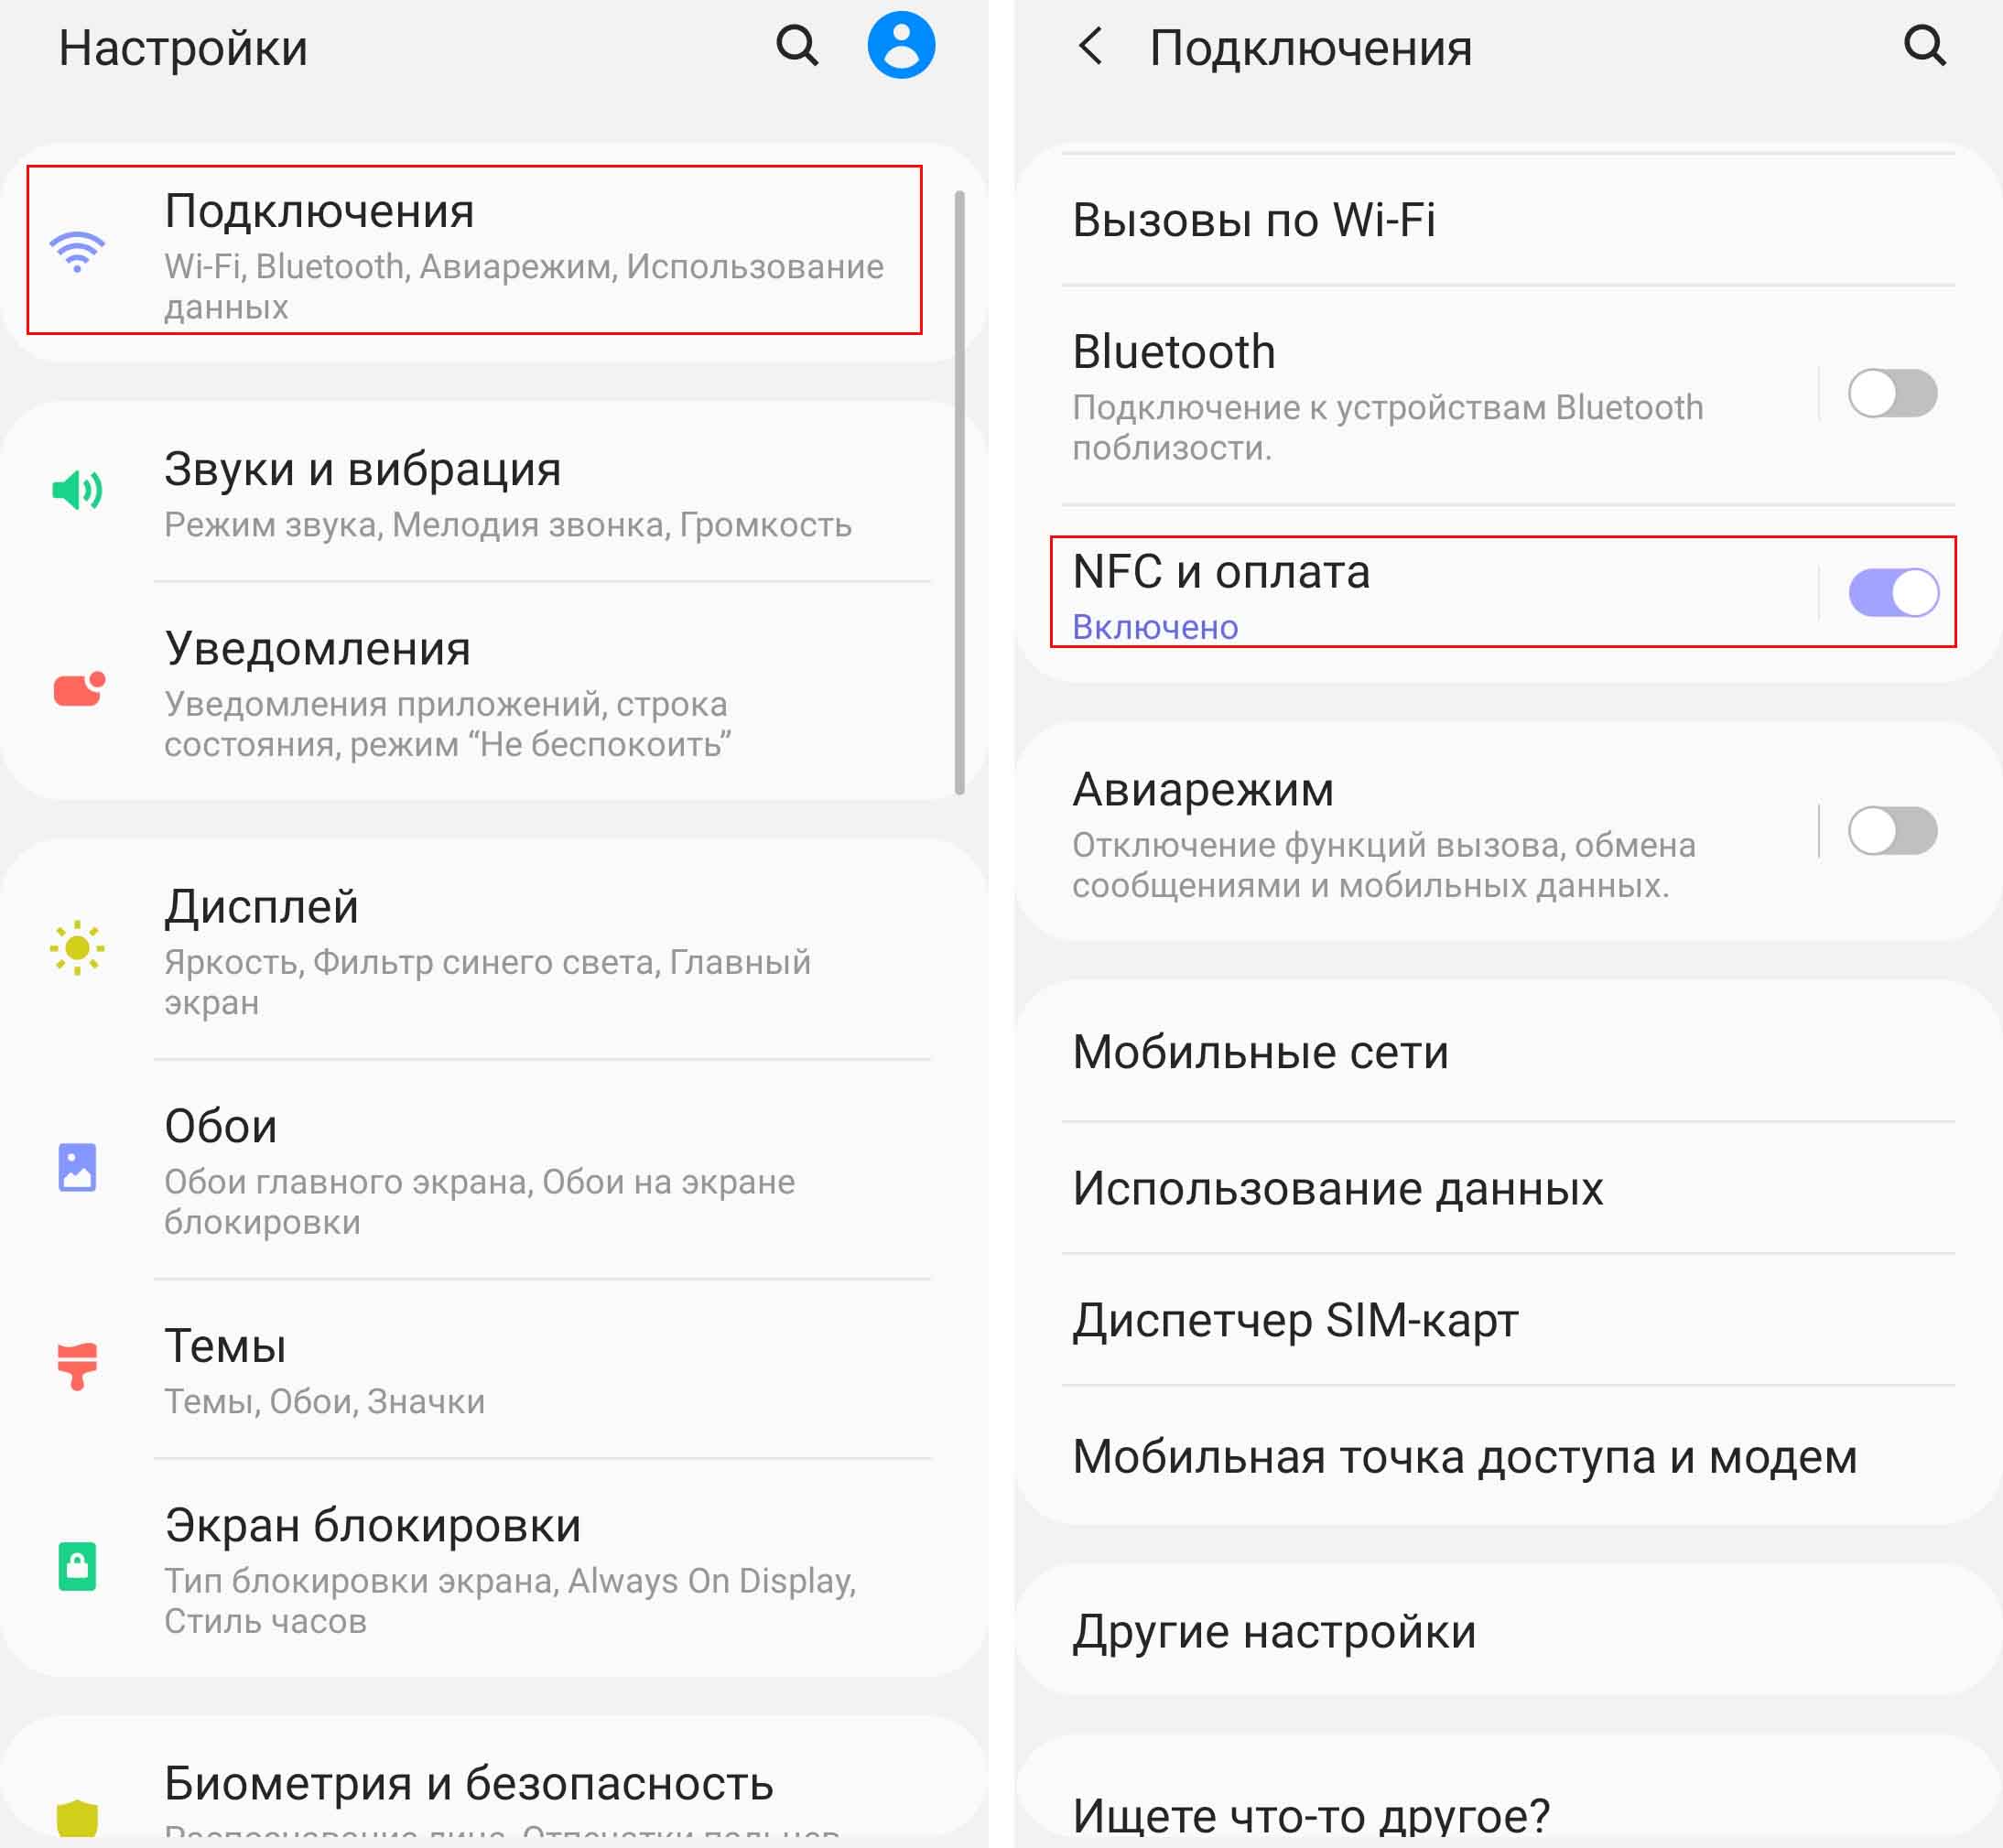 Samsung Pay в России - подробный обзор и ответы на популярные вопросы